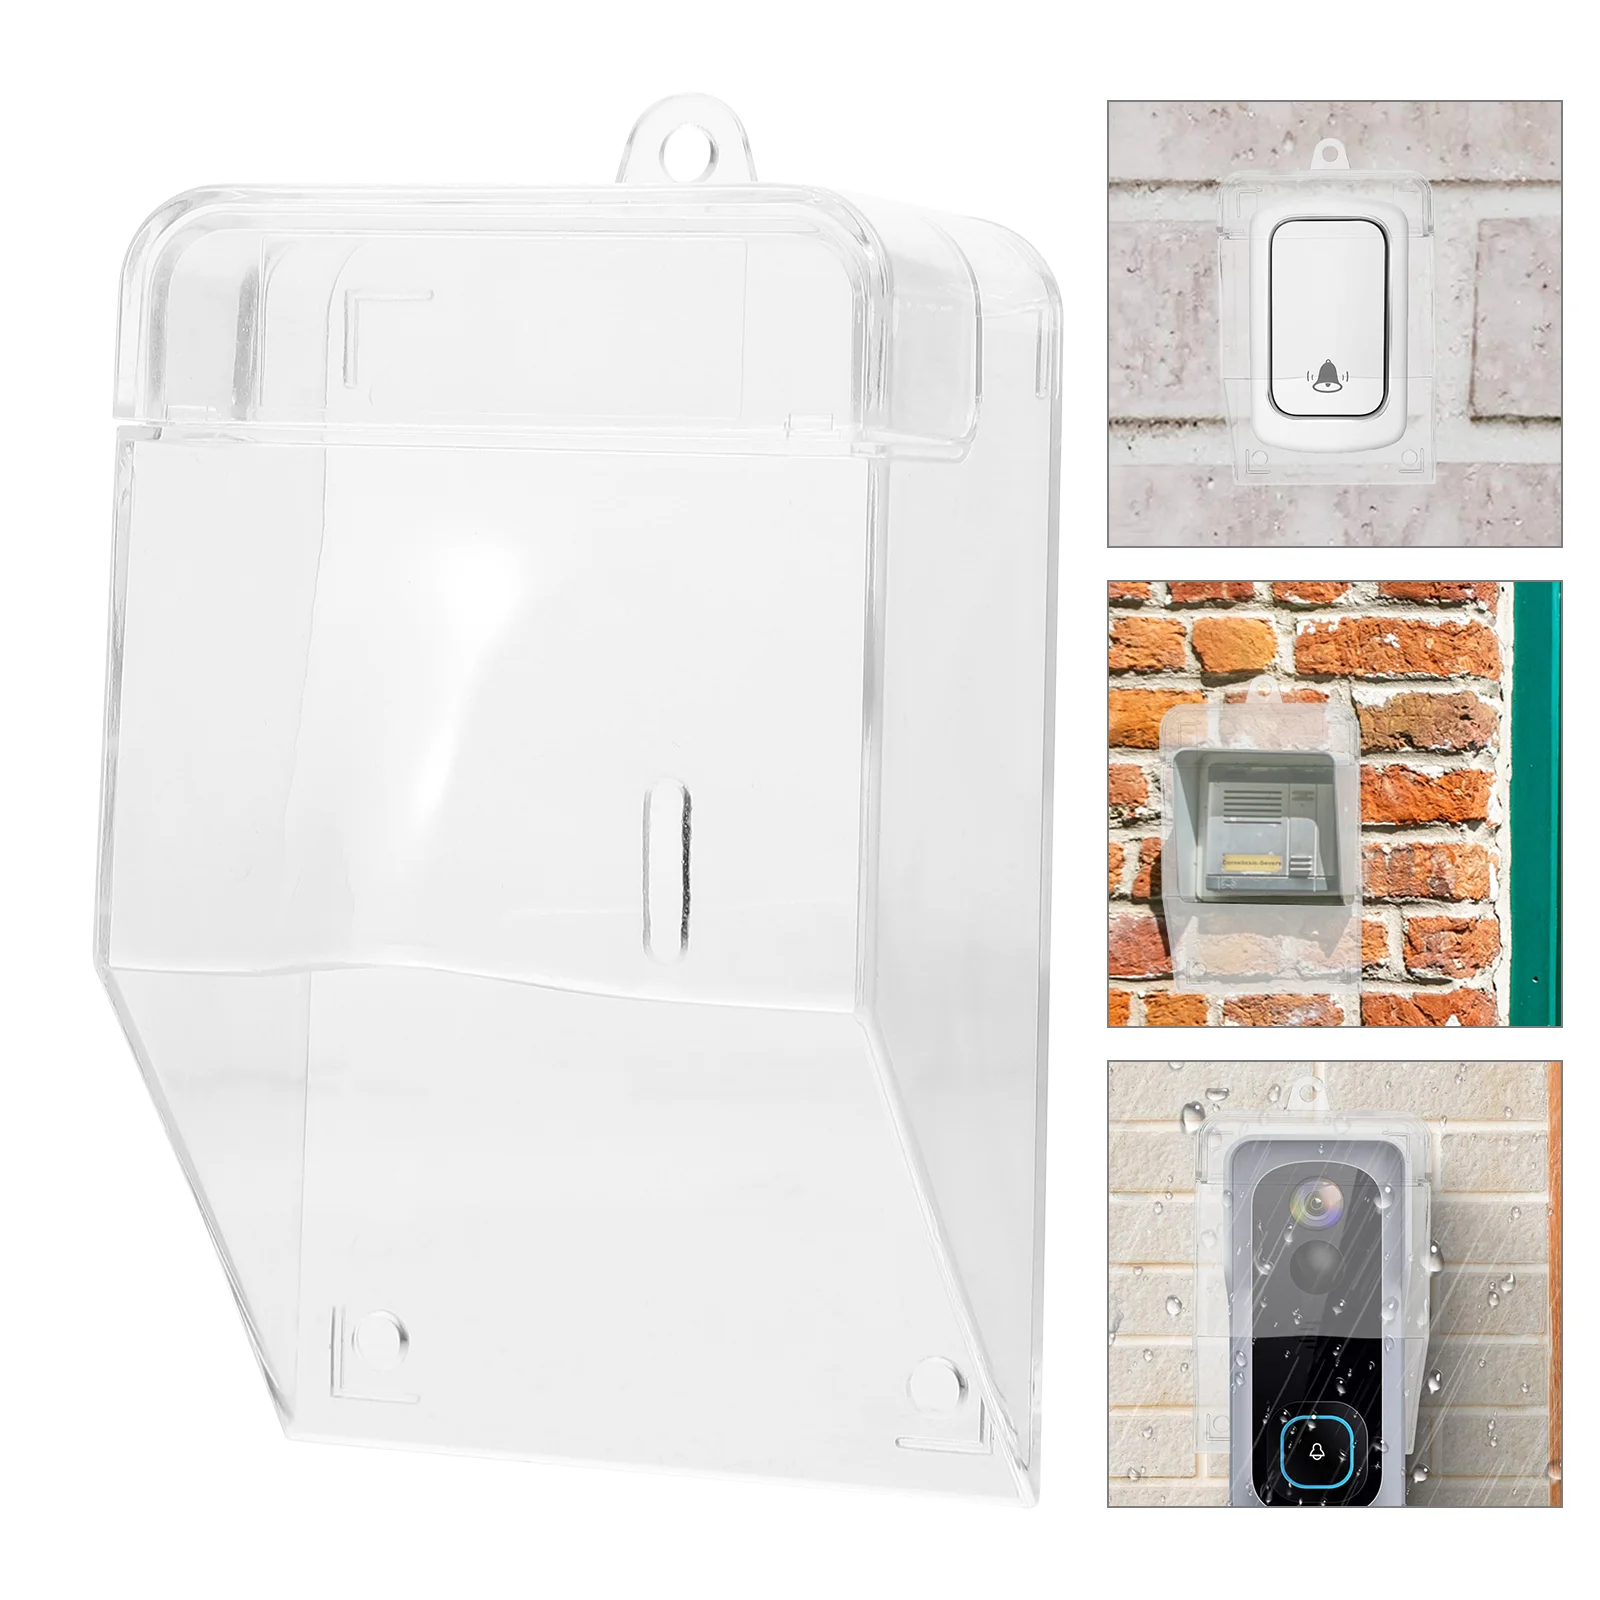 

Doorbell Waterproof Cover Transparent Rainproof for Outdoor Clear Splash-proof Protective Wireless